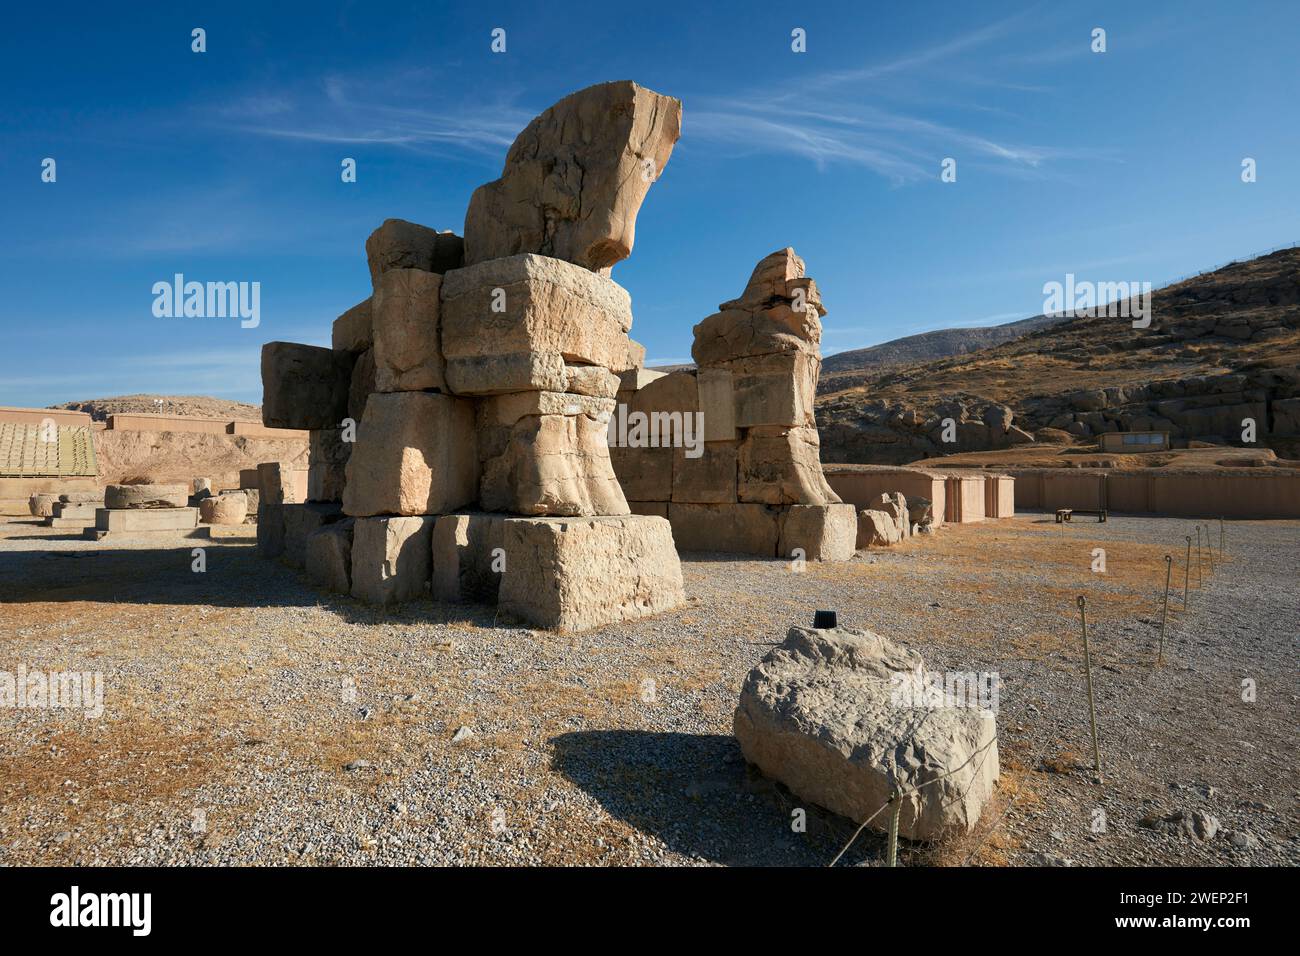 Enormi tori di pietra della porta incompiuta (detta anche porta dell'esercito) a Persepoli, capitale cerimoniale dell'Impero achemenide (550–330 a.C.), Iran. Foto Stock